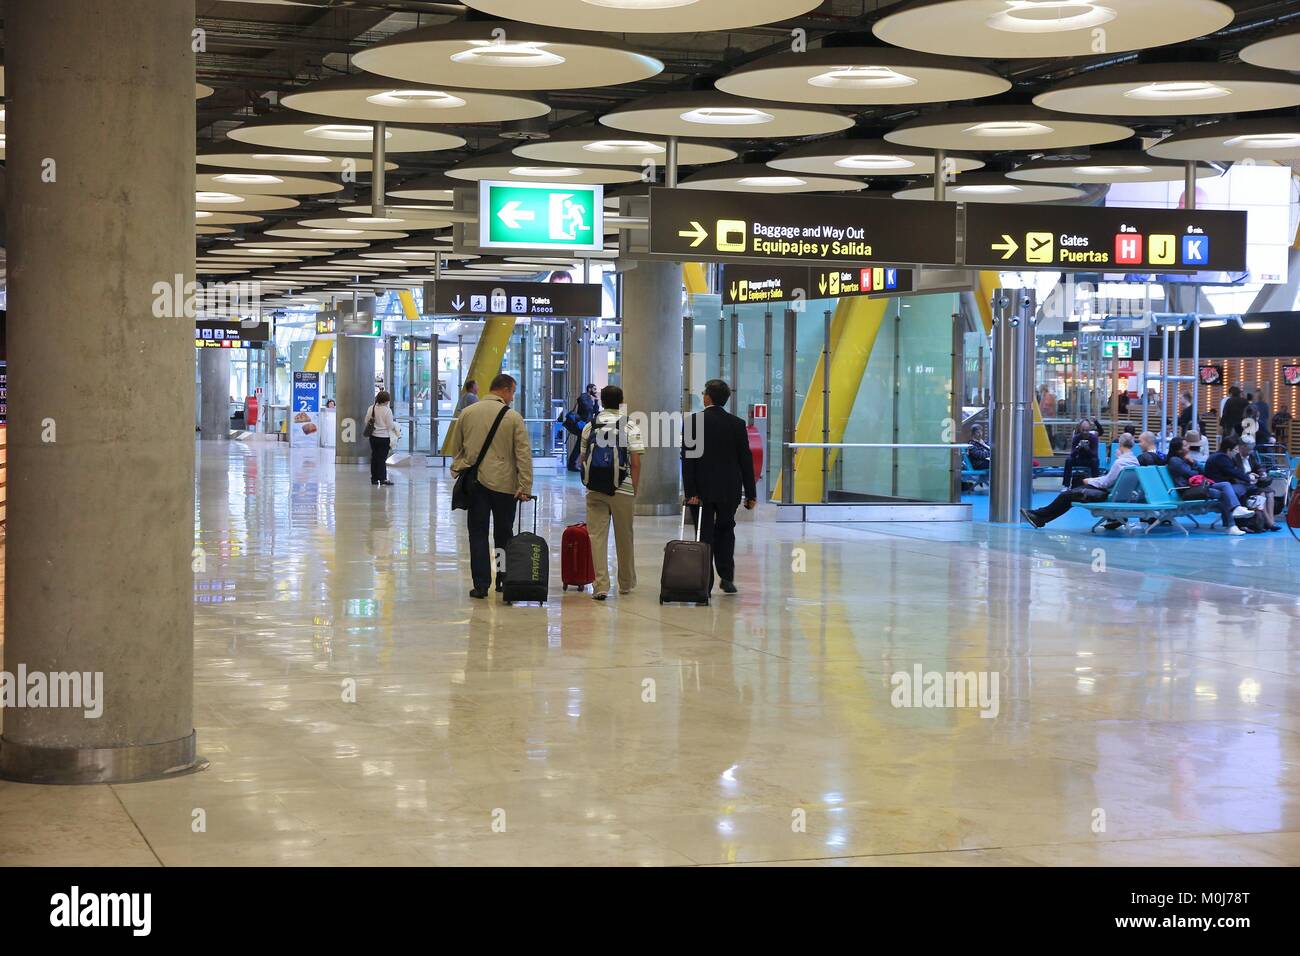 MADRID, Spanien - Oktober 20, 2014: Die Menschen eilen am Terminal 4 des Flughafen Madrid Barajas entfernt. Die berühmten Terminal 4 wurde von Antonio Lamela und Richa konzipiert Stockfoto